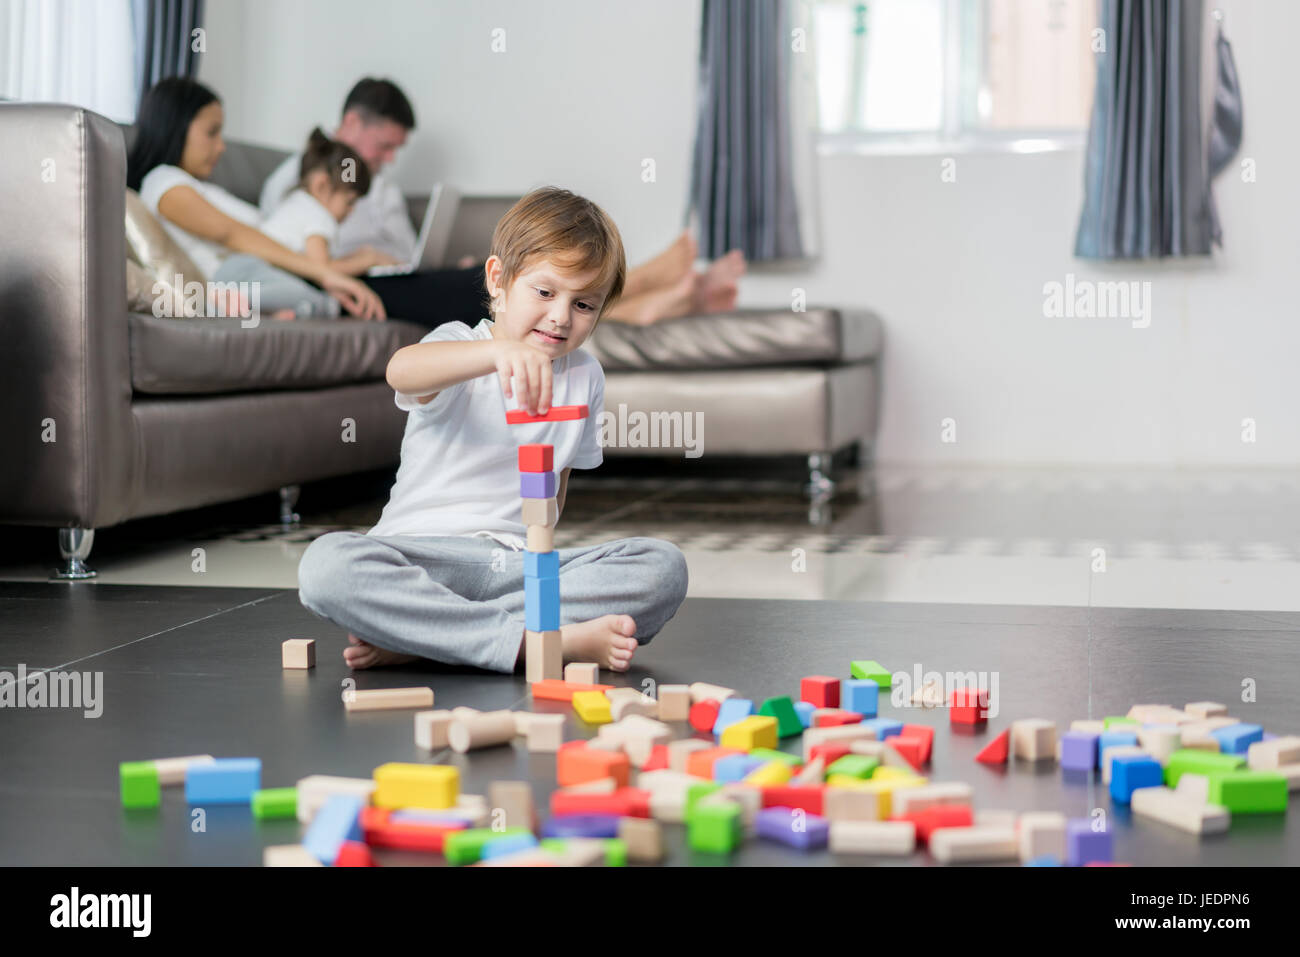 Asiatische junge Holz Spielzeug im Wohnzimmer mit Vater, Mutter und Tochter im Hintergrund zu spielen. Glückliche Familie. Stockfoto